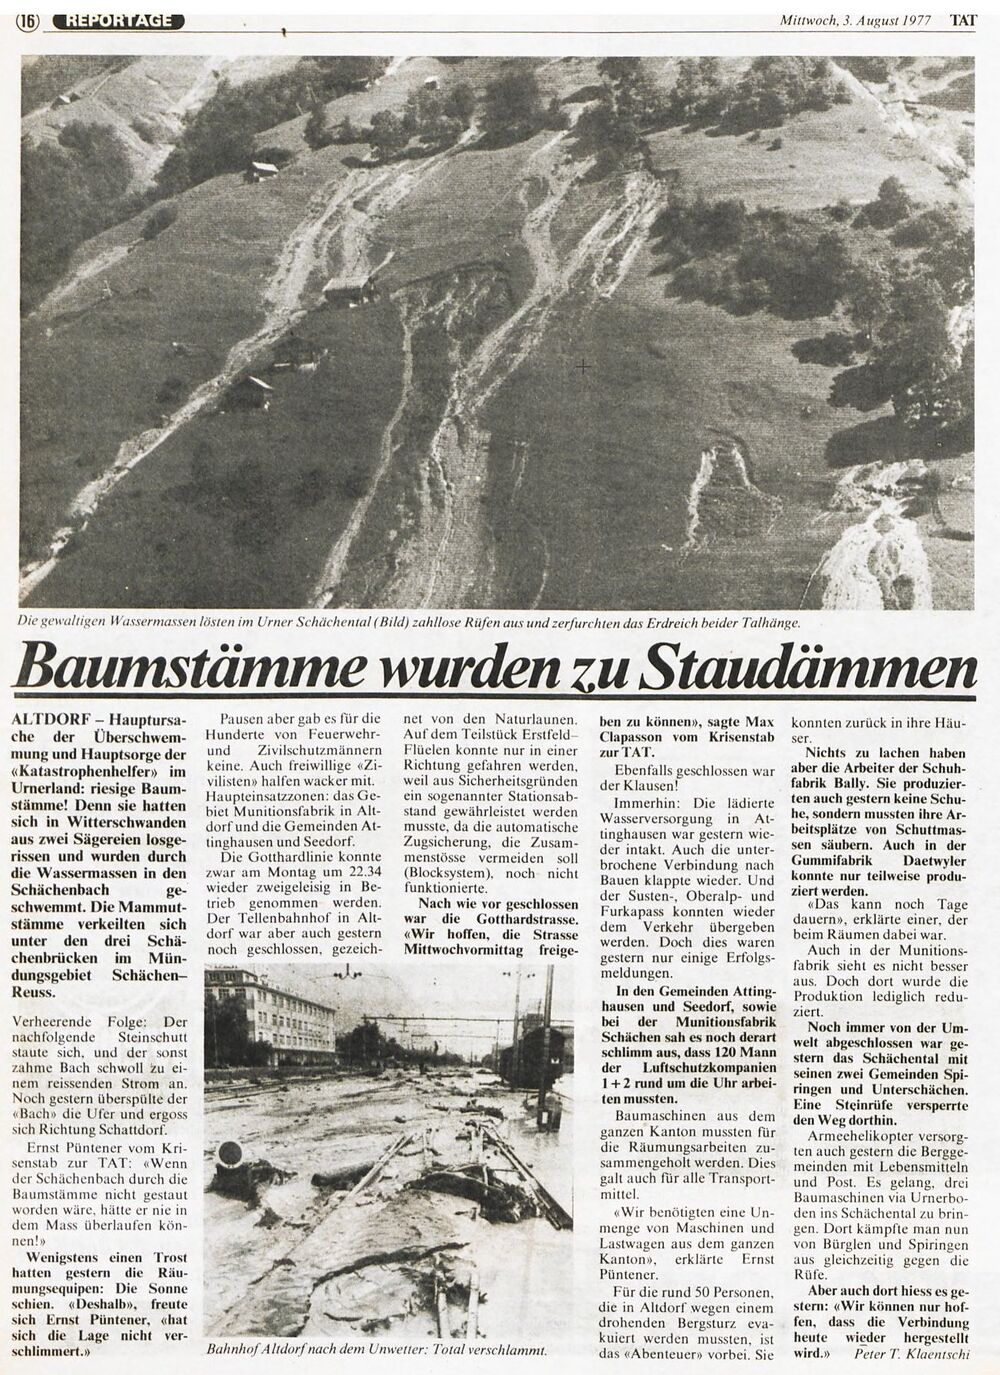 19770731 01 Flood Zentralschweiz Die Tat02.jpg